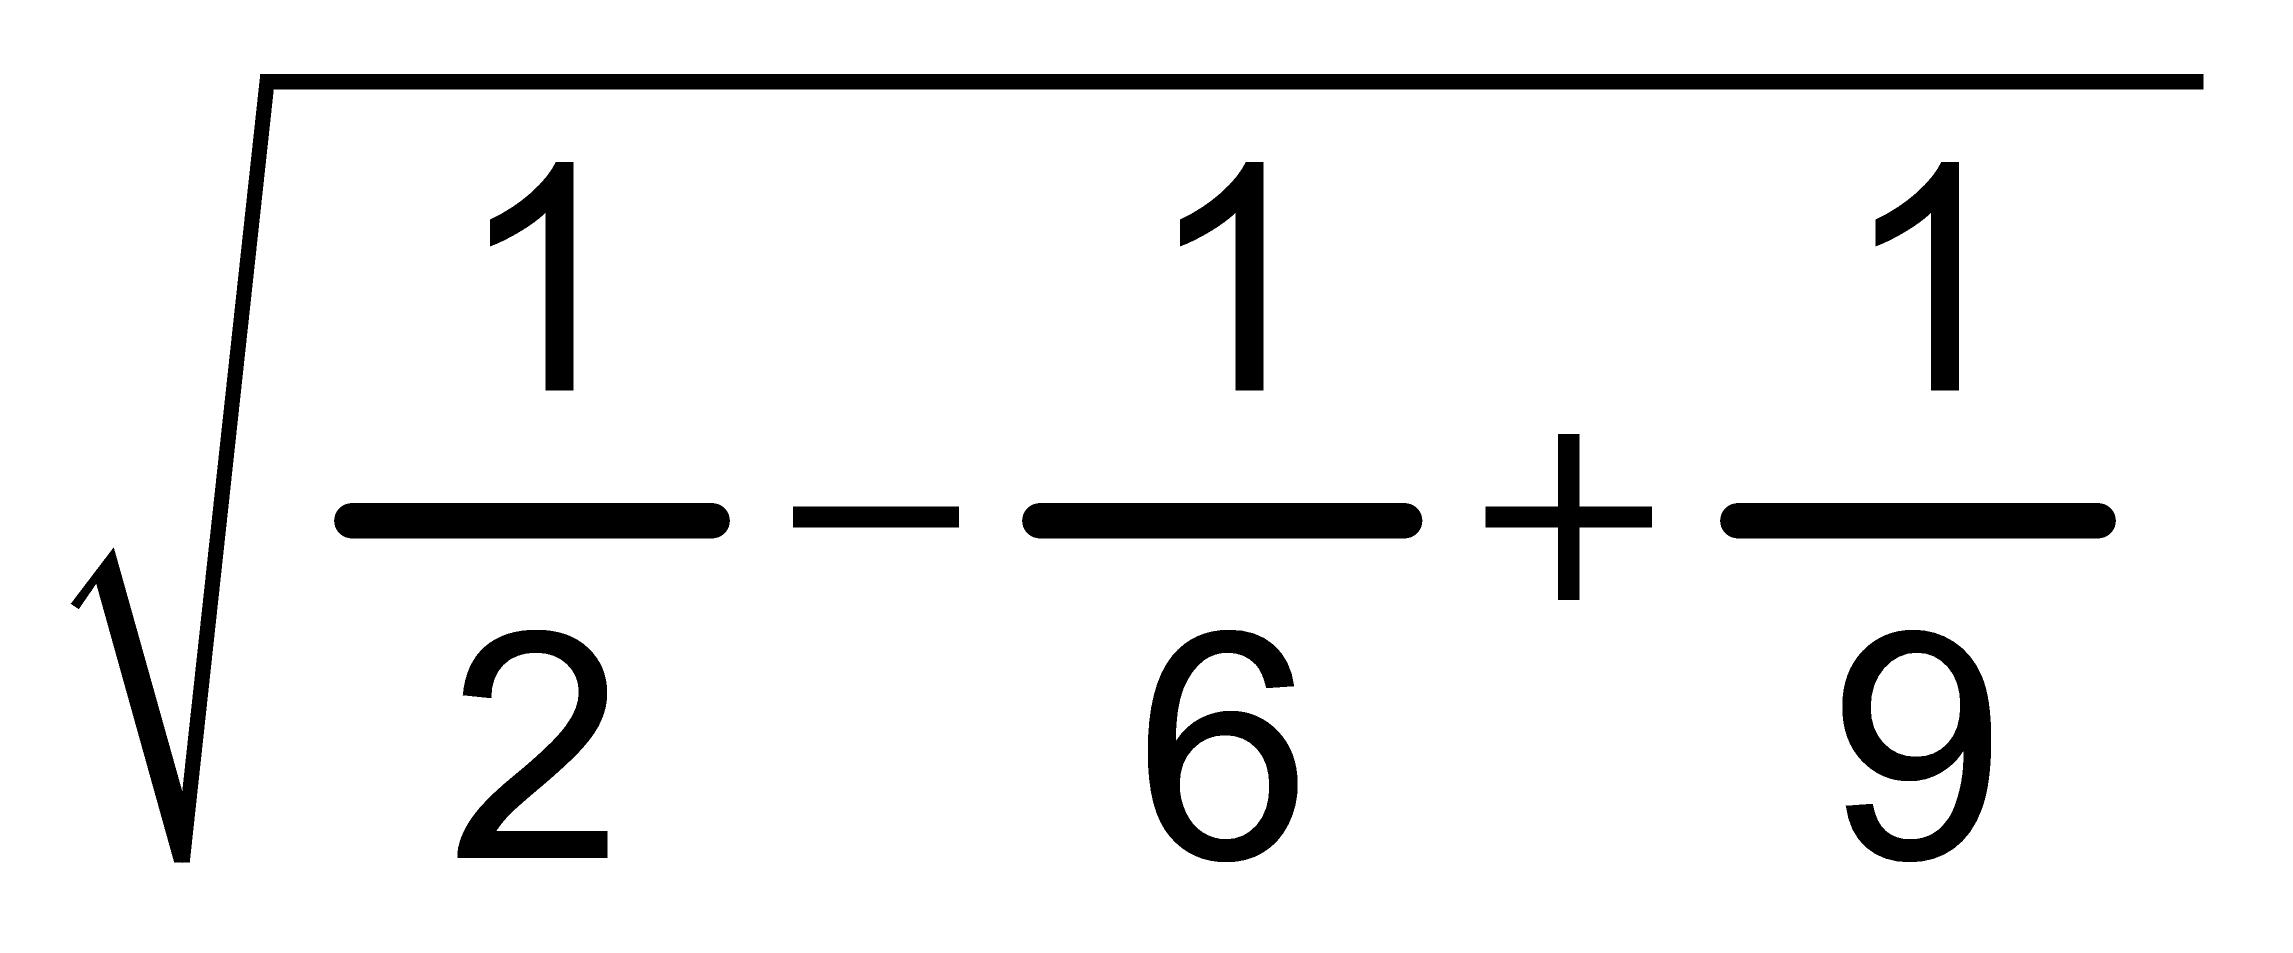 eşitliğini sağlayan x gerçel sayısı